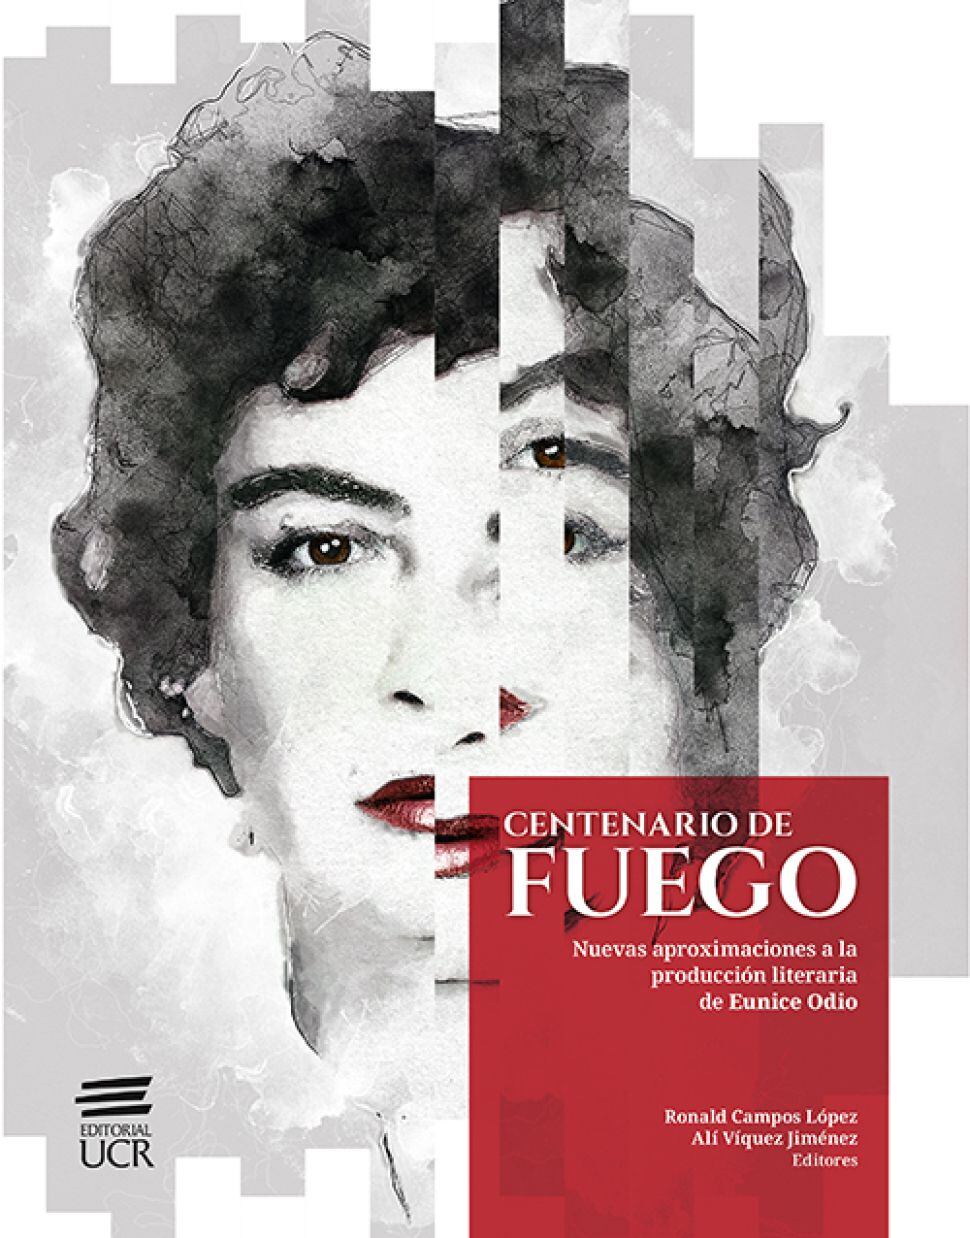 'Centenario de fuego: Nuevas aproximaciones a la producción literaria de Eunice Odio' es un volumen interdisciplinario nacido en el centenario de la autora celebrado en el 2019.